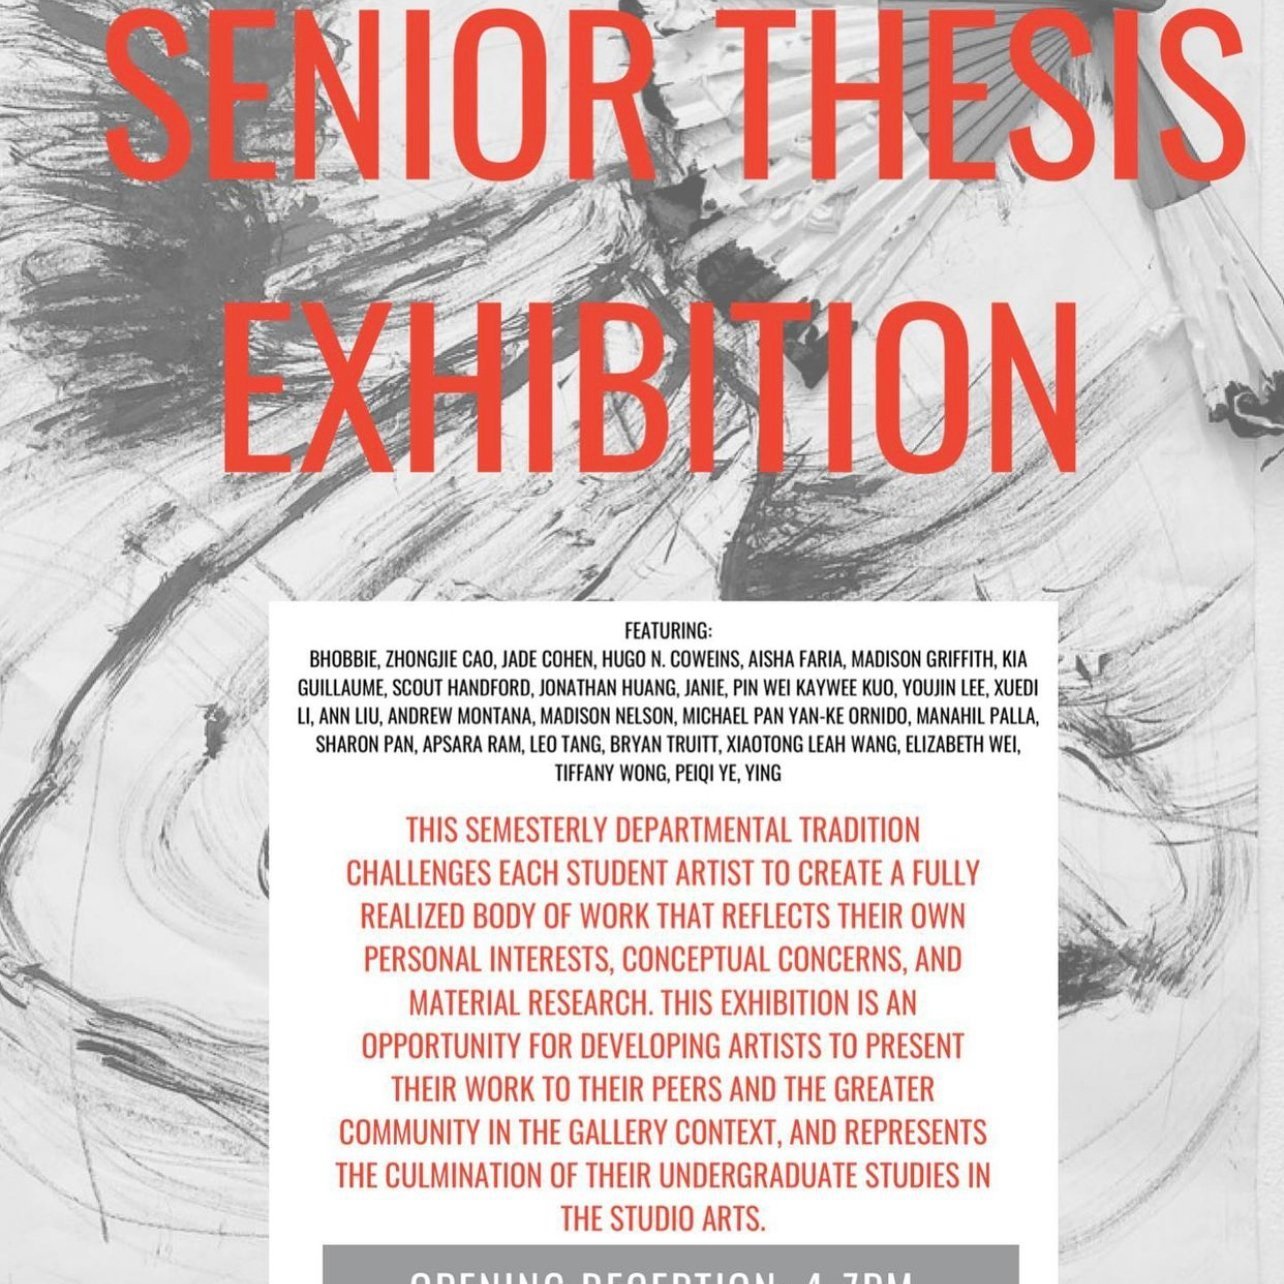 Senior Thesis Exhibition